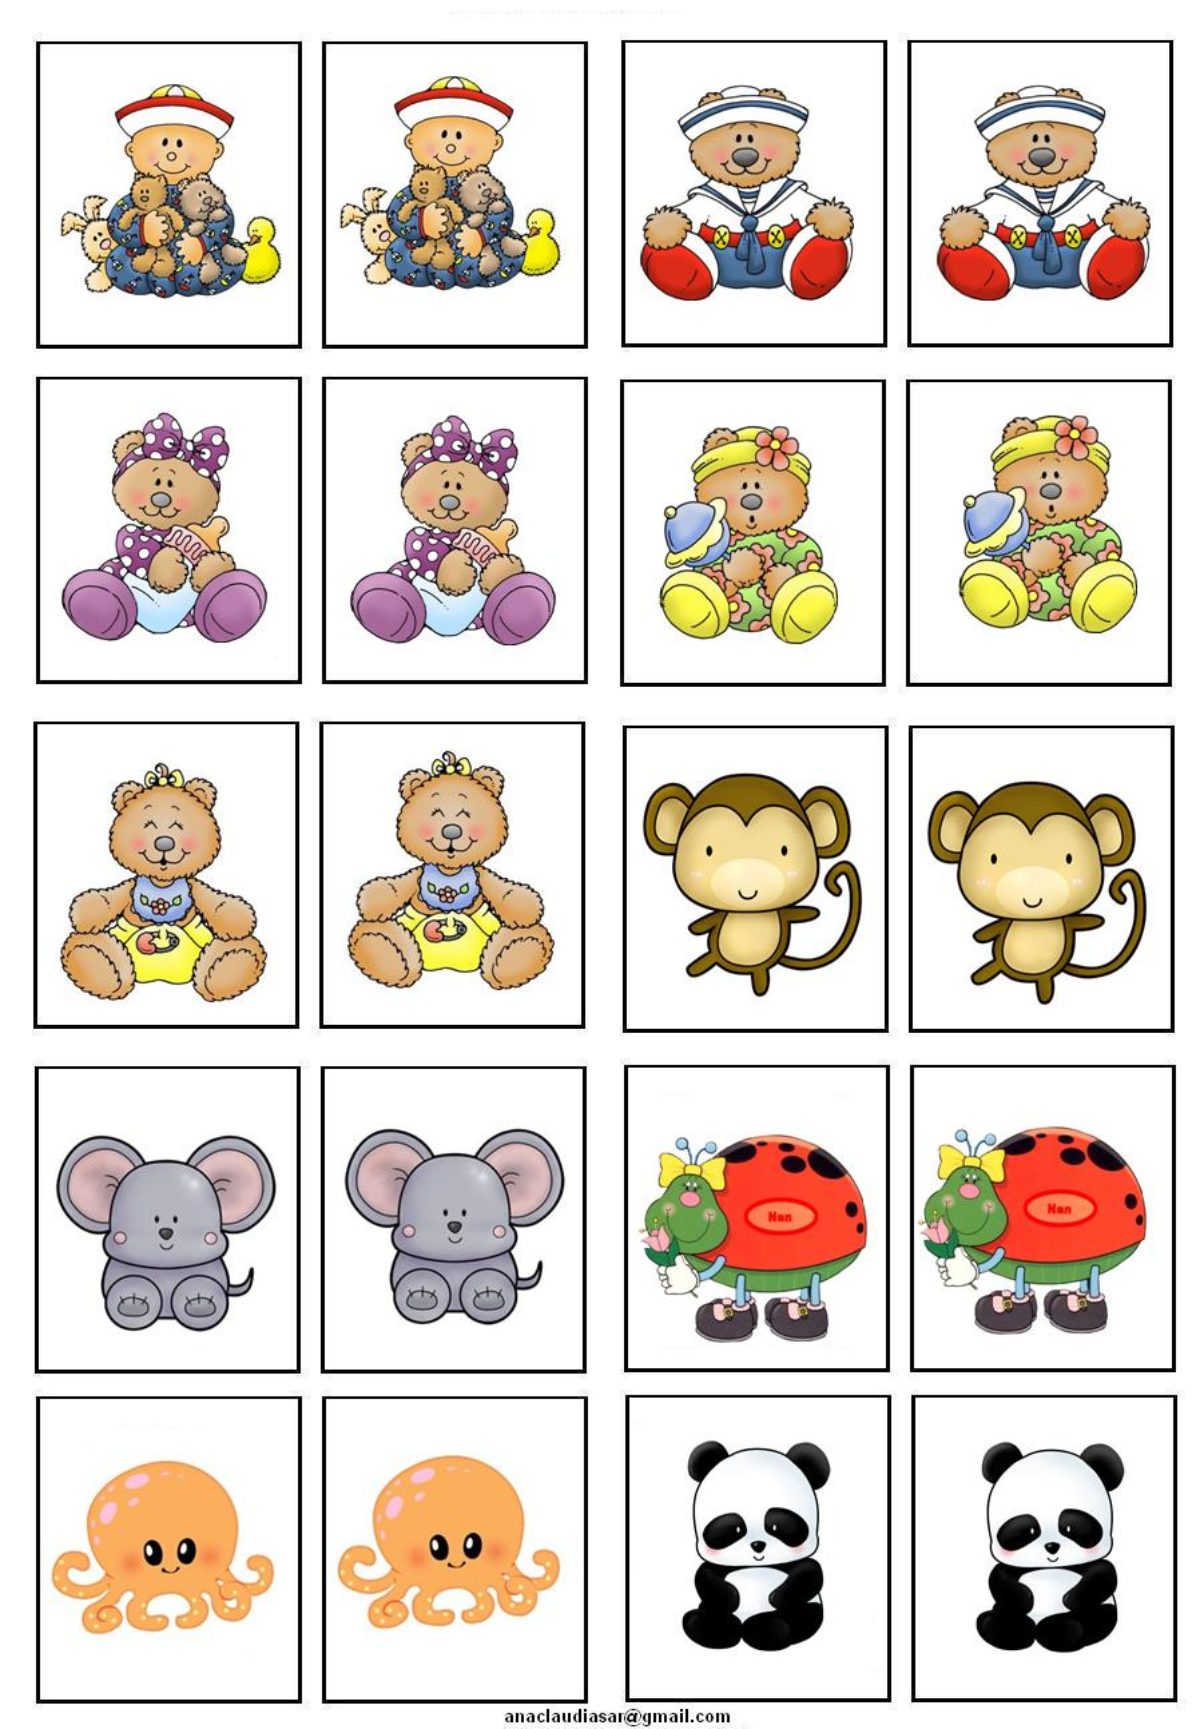 Jogo da Memória para Imprimir: 18 Modelos para Divertir as Crianças